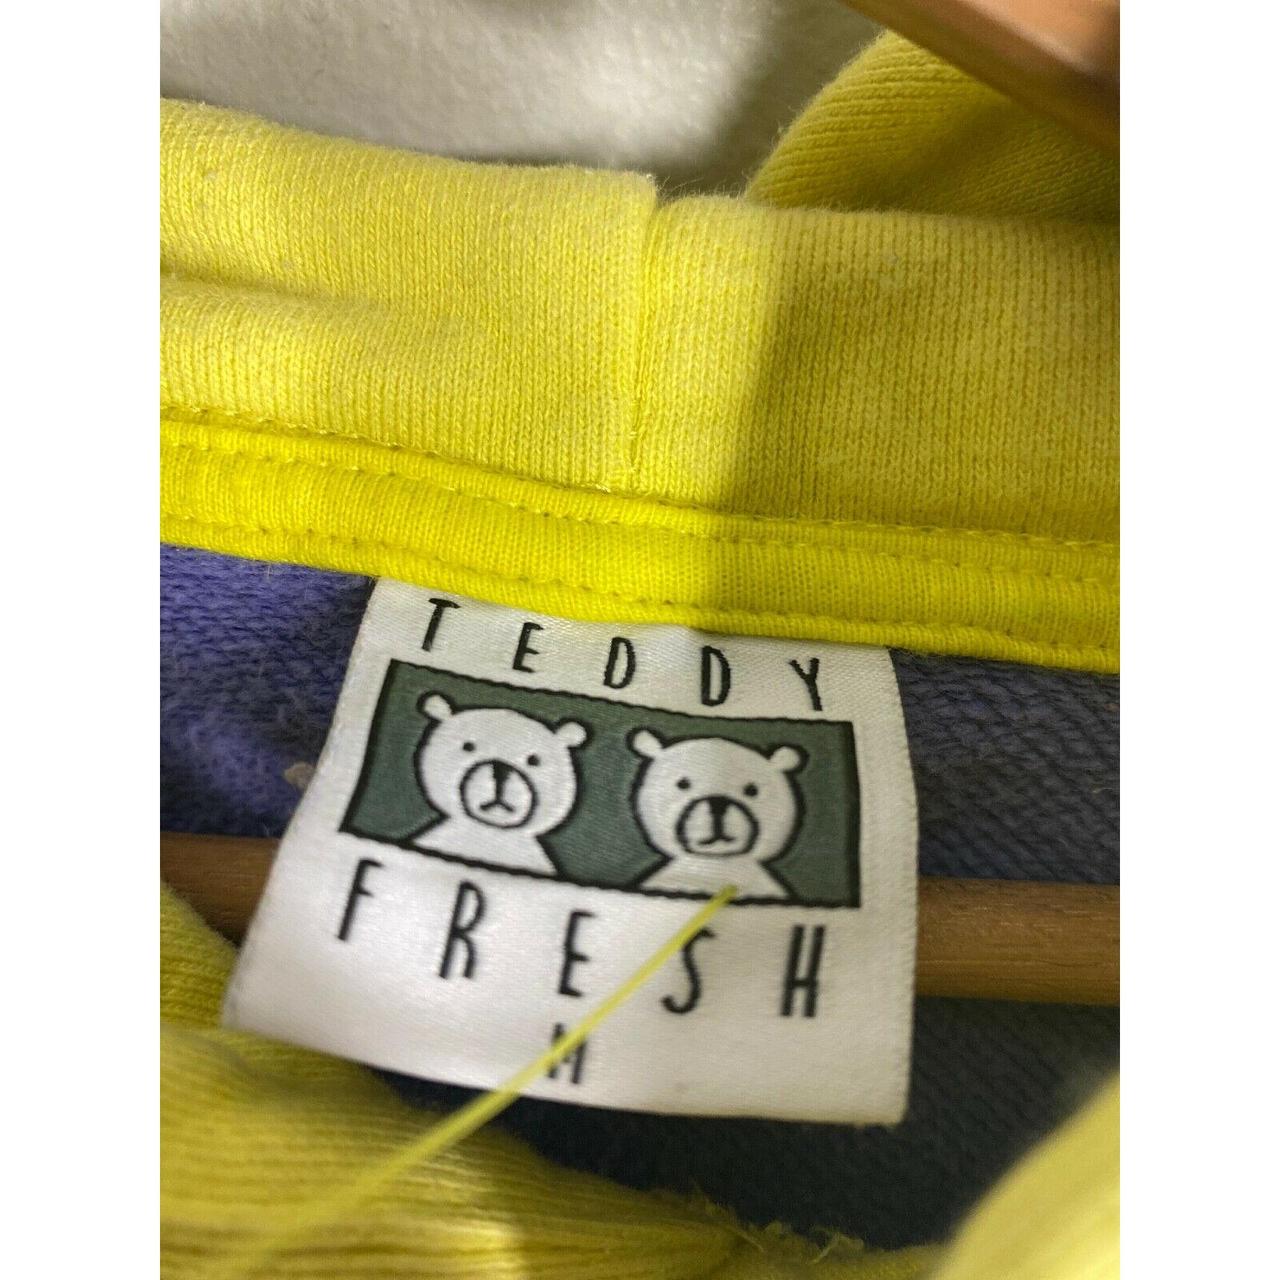 Teddy Fresh Hoodie | Depop